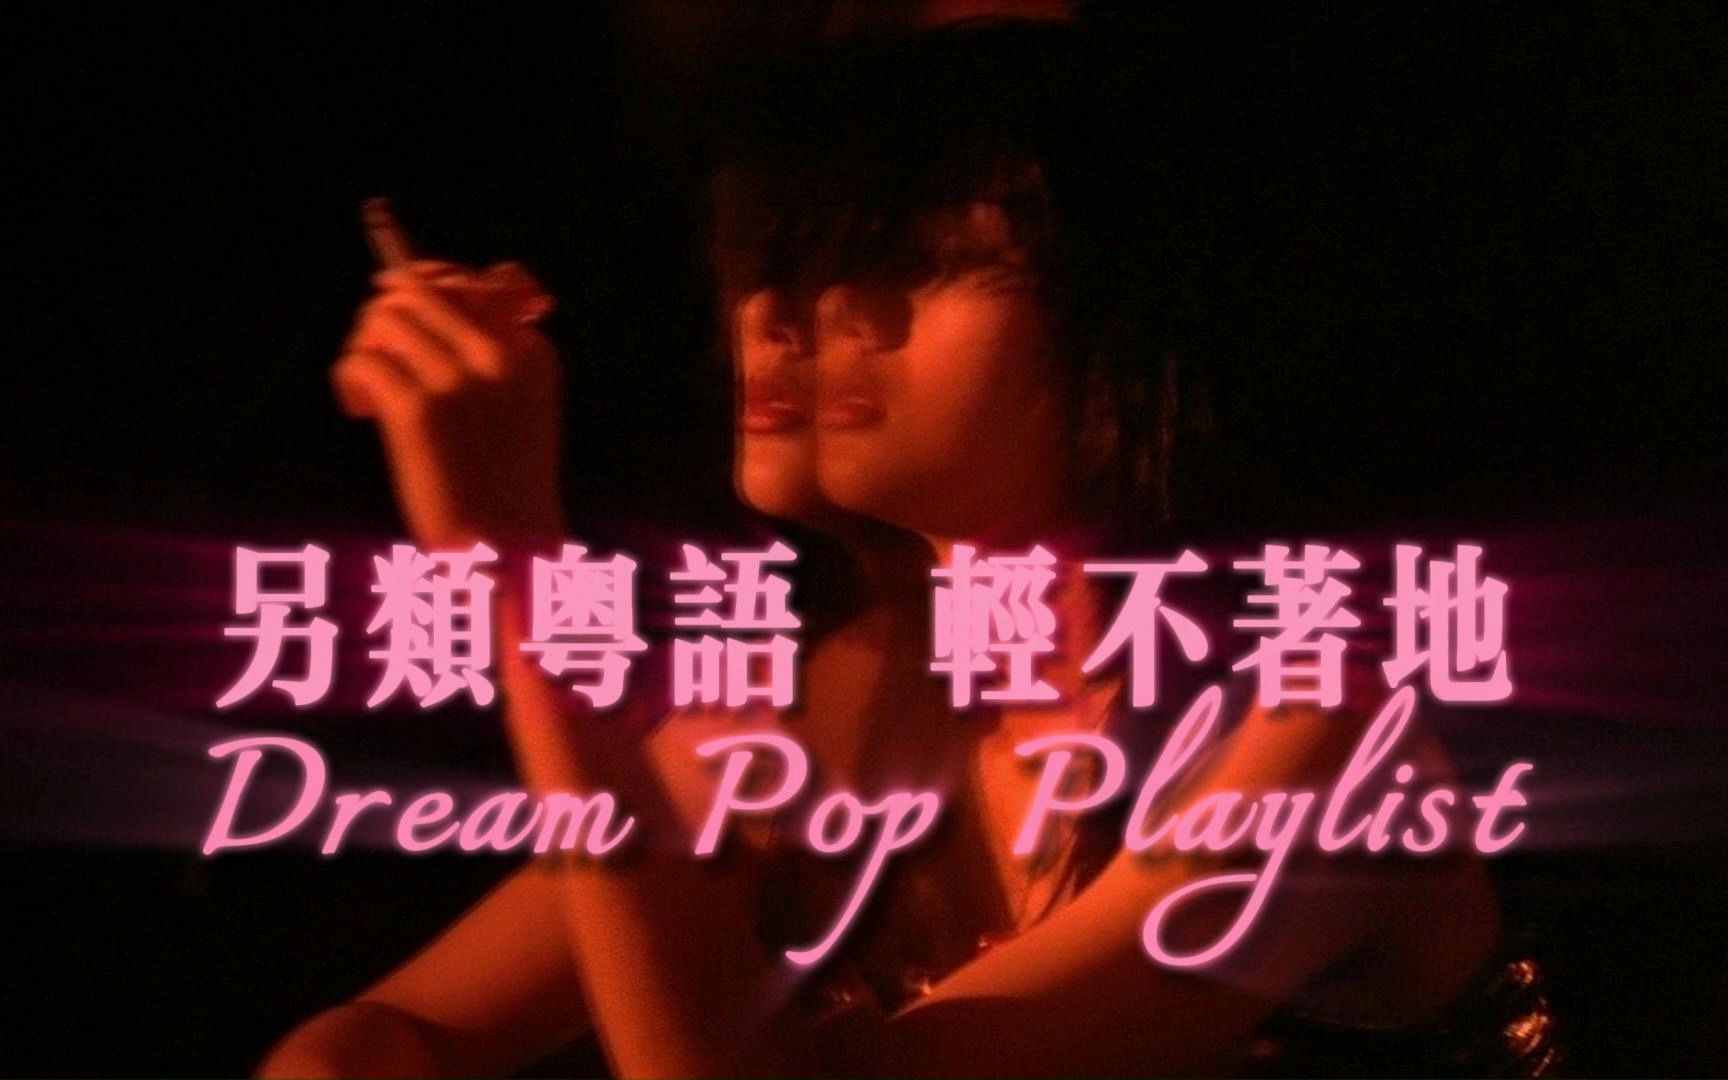 【微醺Playlist】另类粤语 Dream Pop | 与夜暧昧 轻轻袅袅 将夜灌醉 绵绵软软